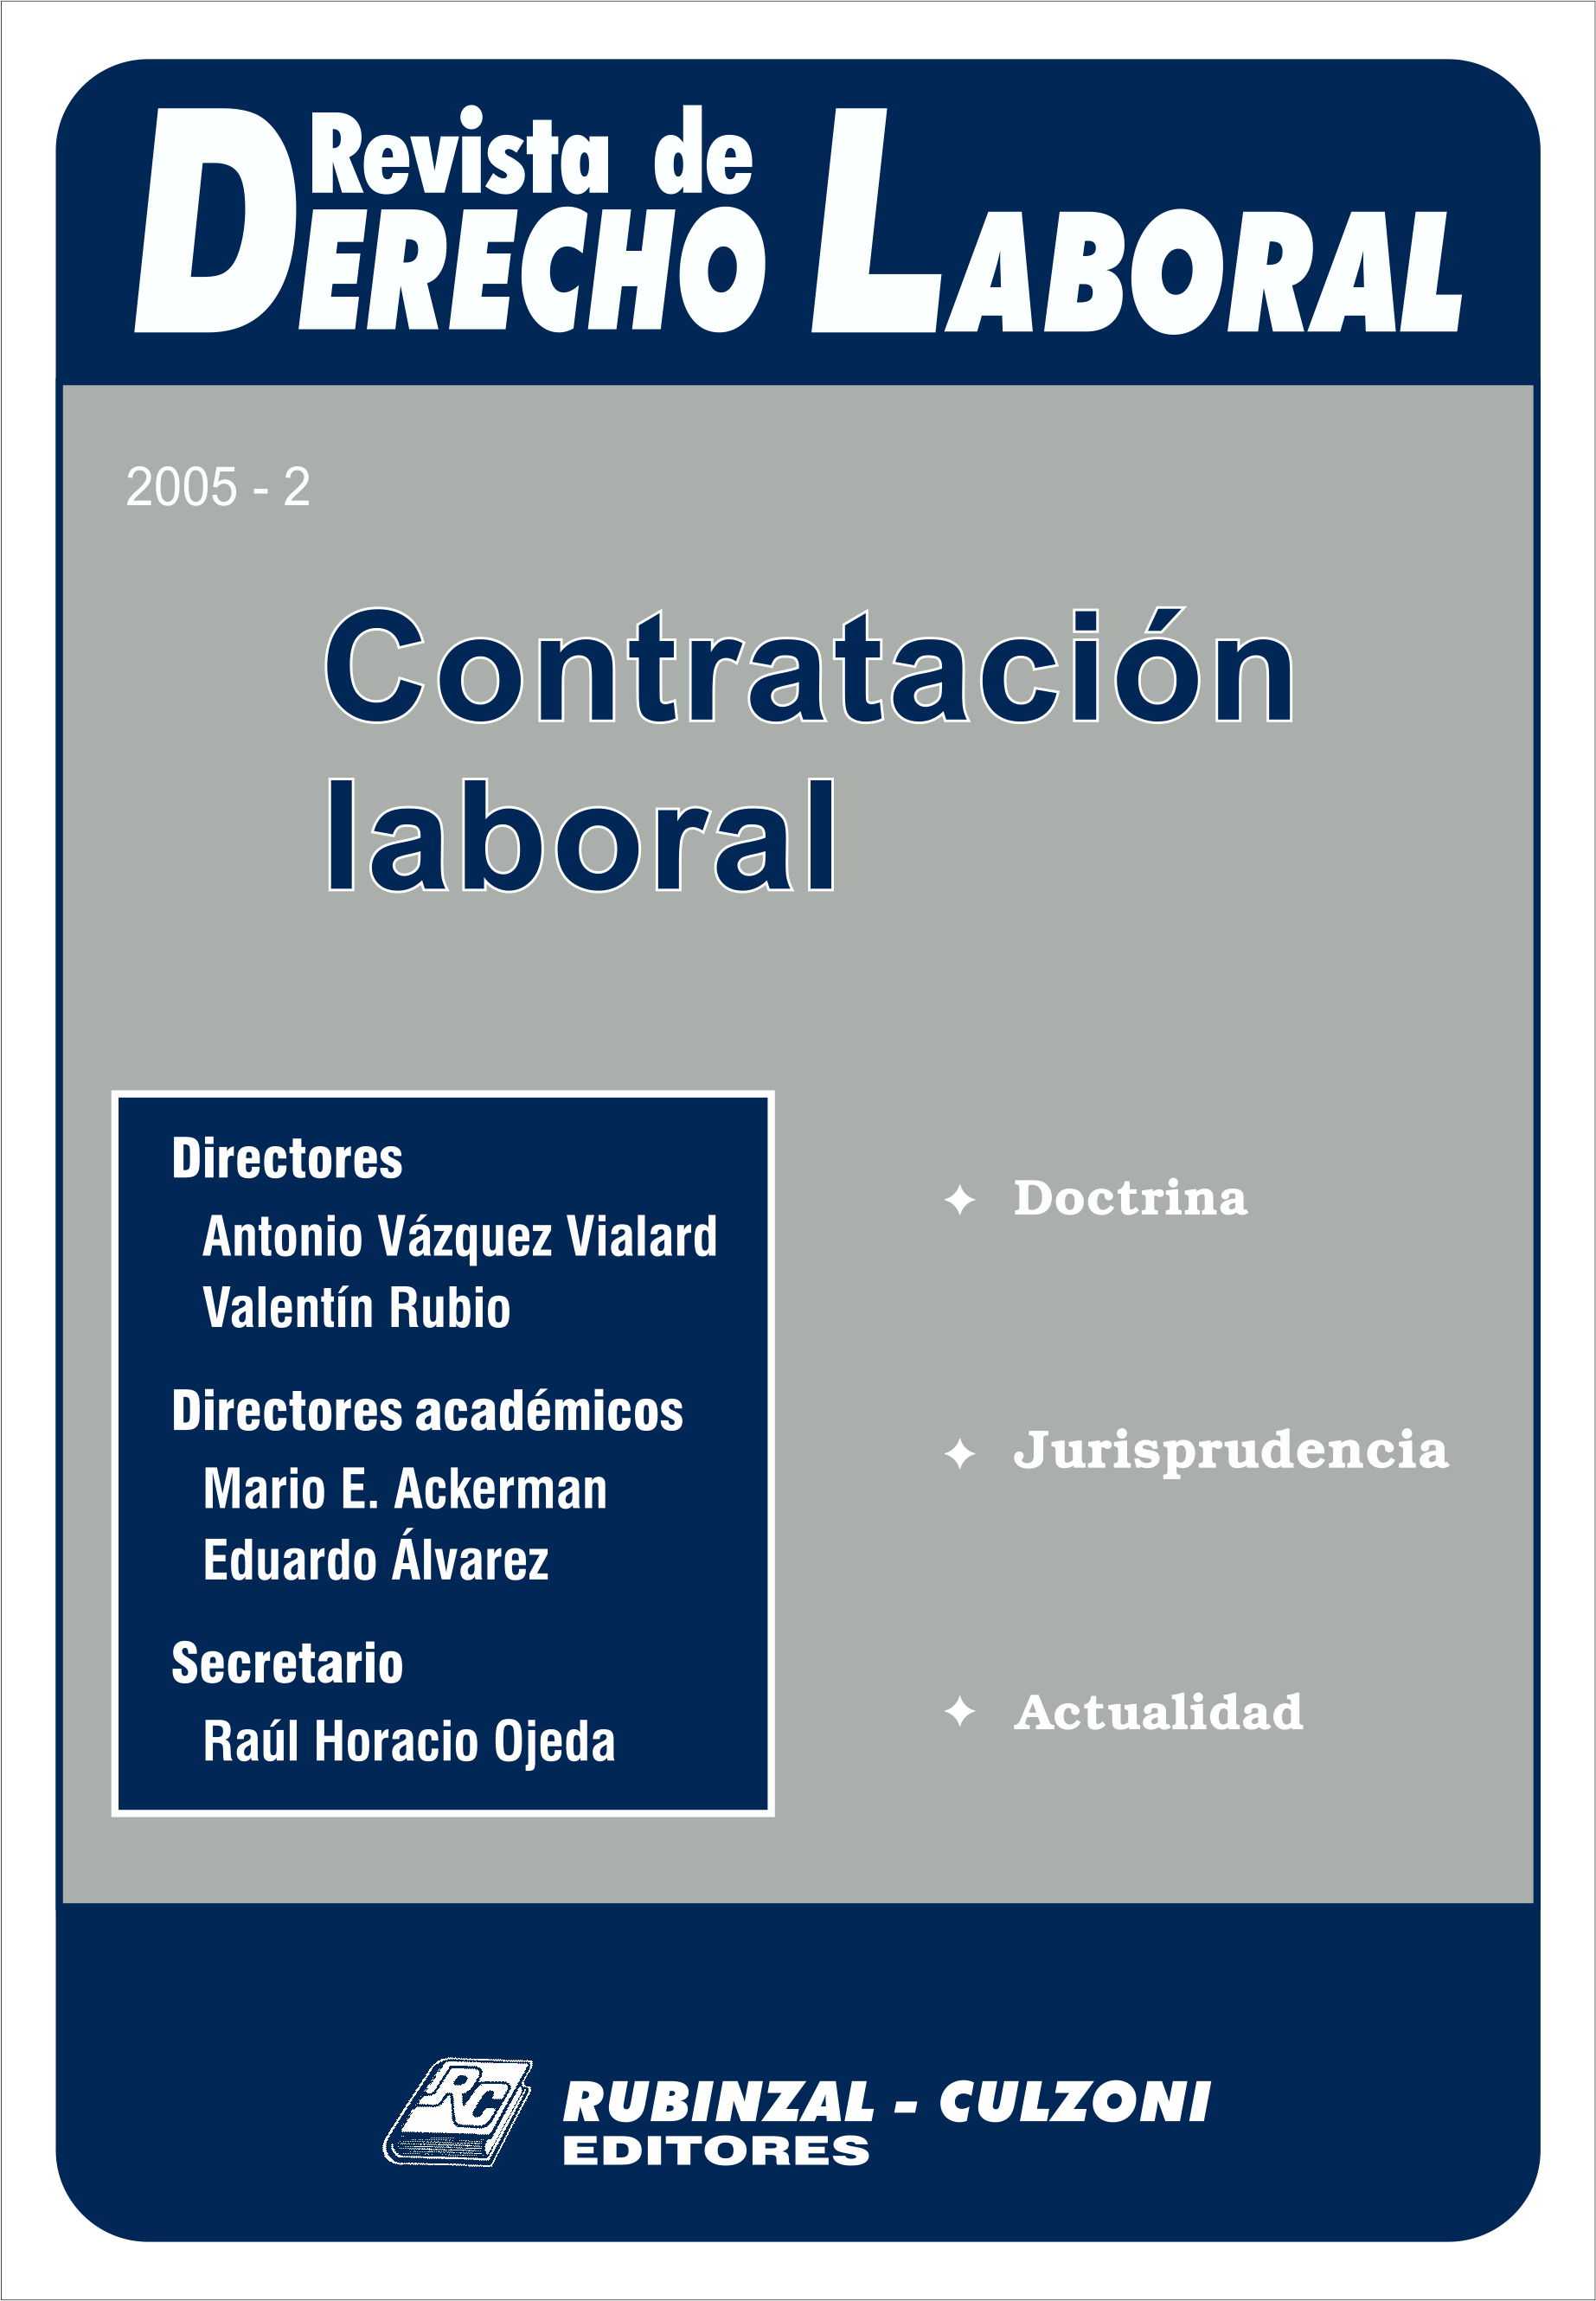 Revista de Derecho Laboral - Contratación laboral.